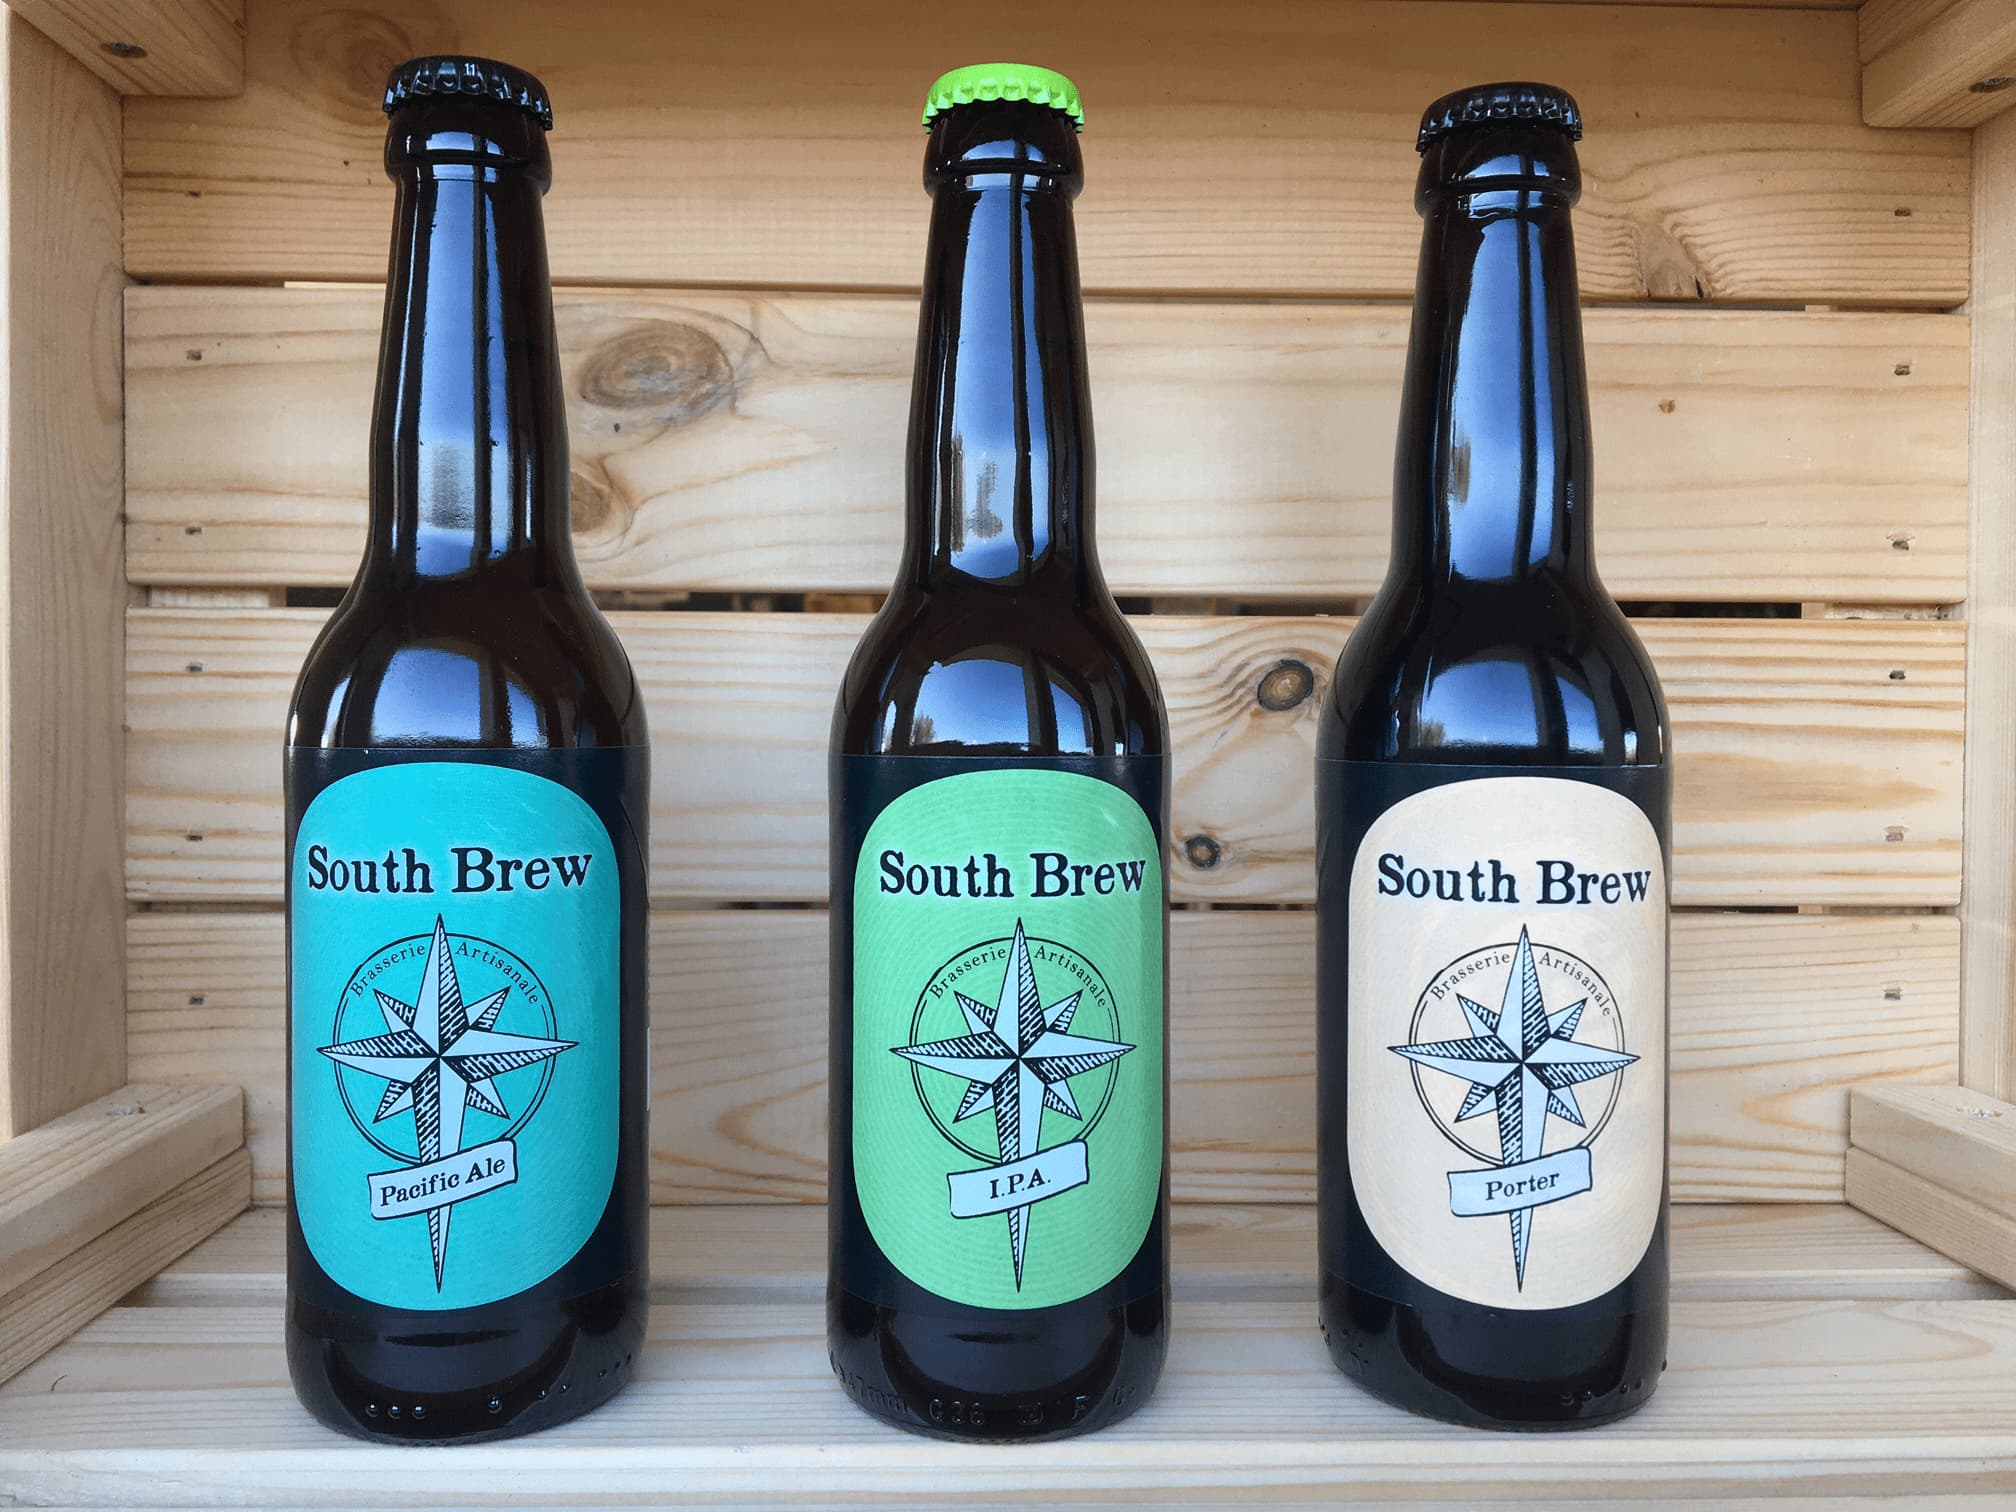 BAP South Brew, la marque des bières Craft Expérience de la Brasserie Artisanale de Provence